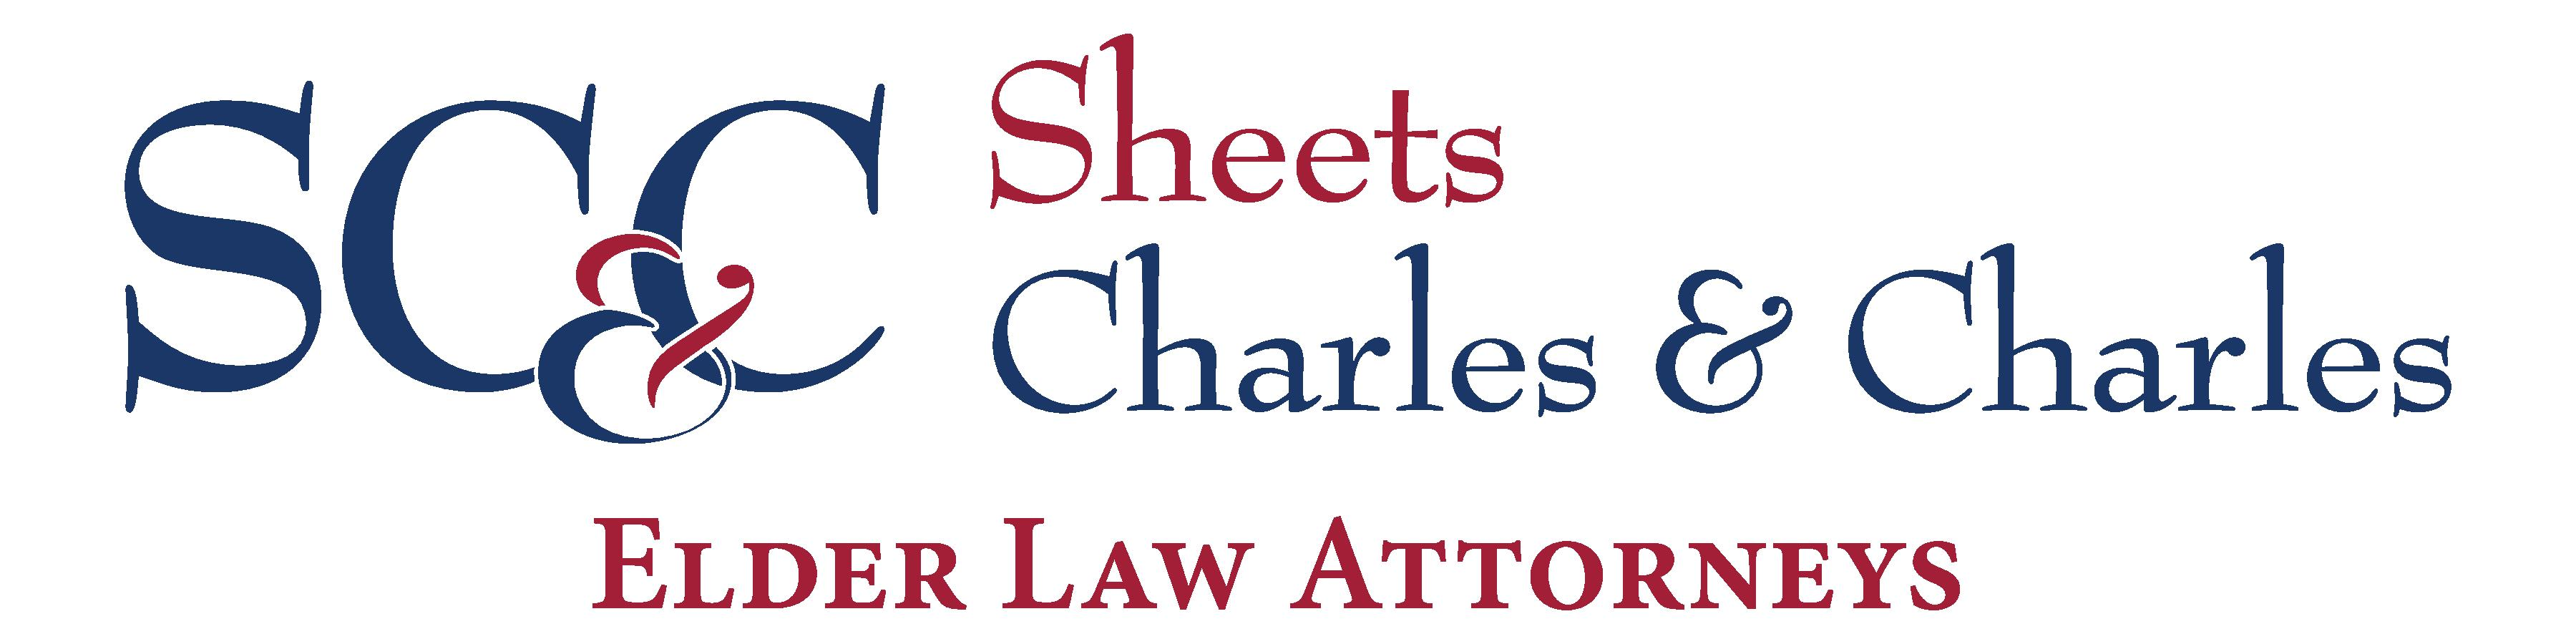 4. Sheets Charles & Charles (Silver)